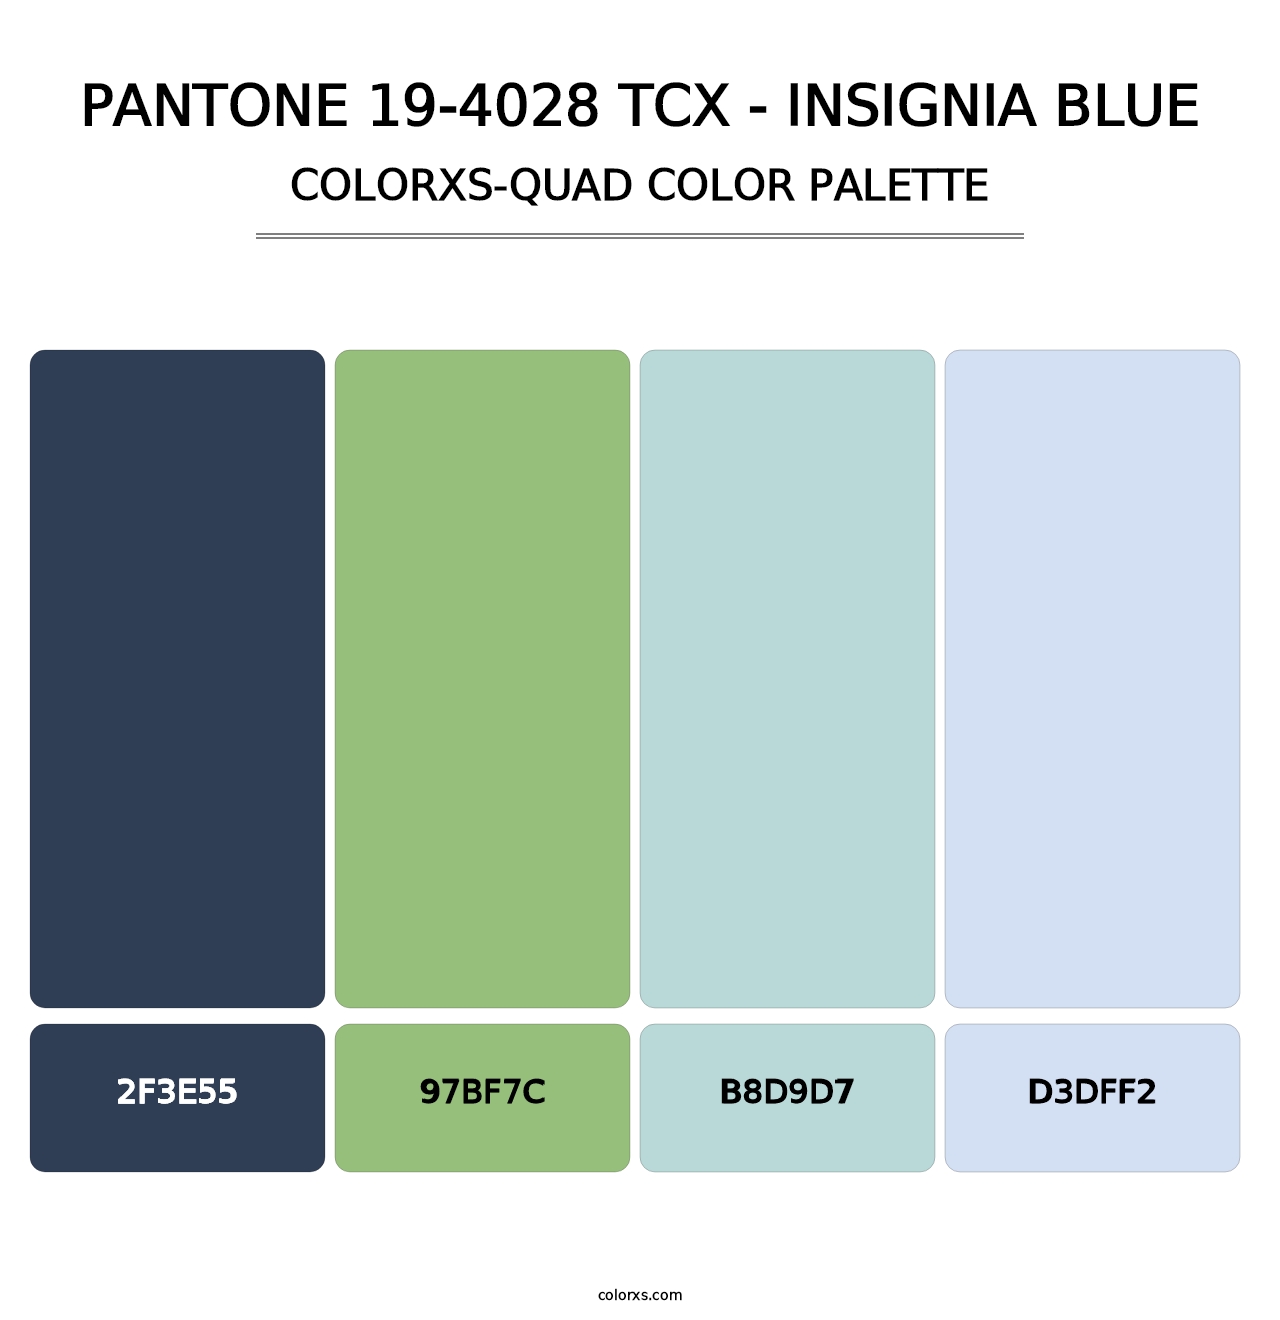 PANTONE 19-4028 TCX - Insignia Blue - Colorxs Quad Palette